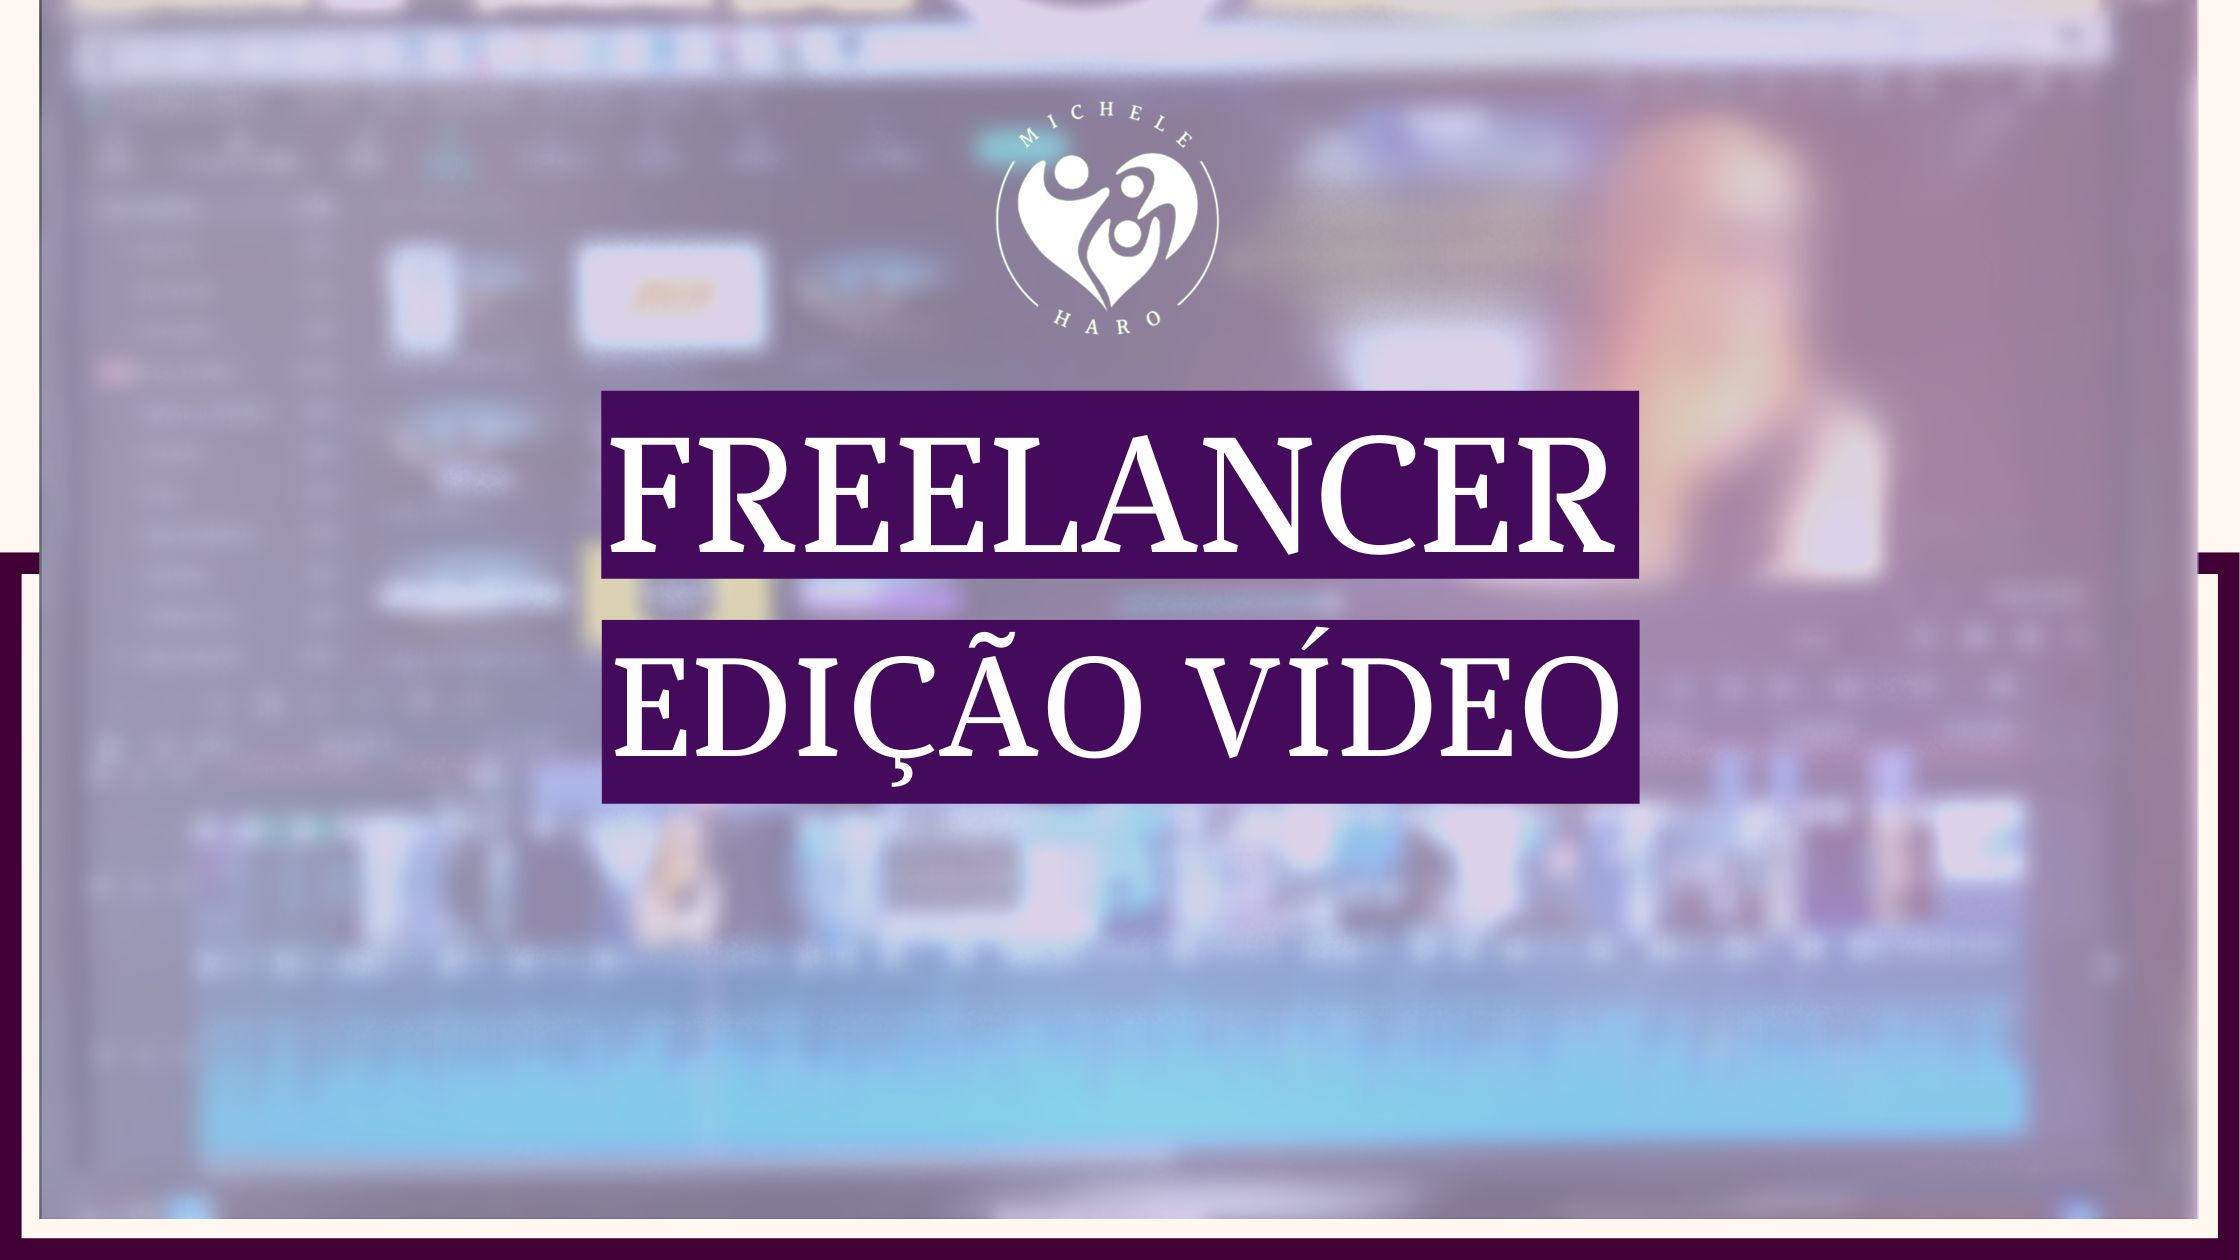 Freelancer Edição De Vídeo Contratar Editor De Vídeo Blog Michele Haro 